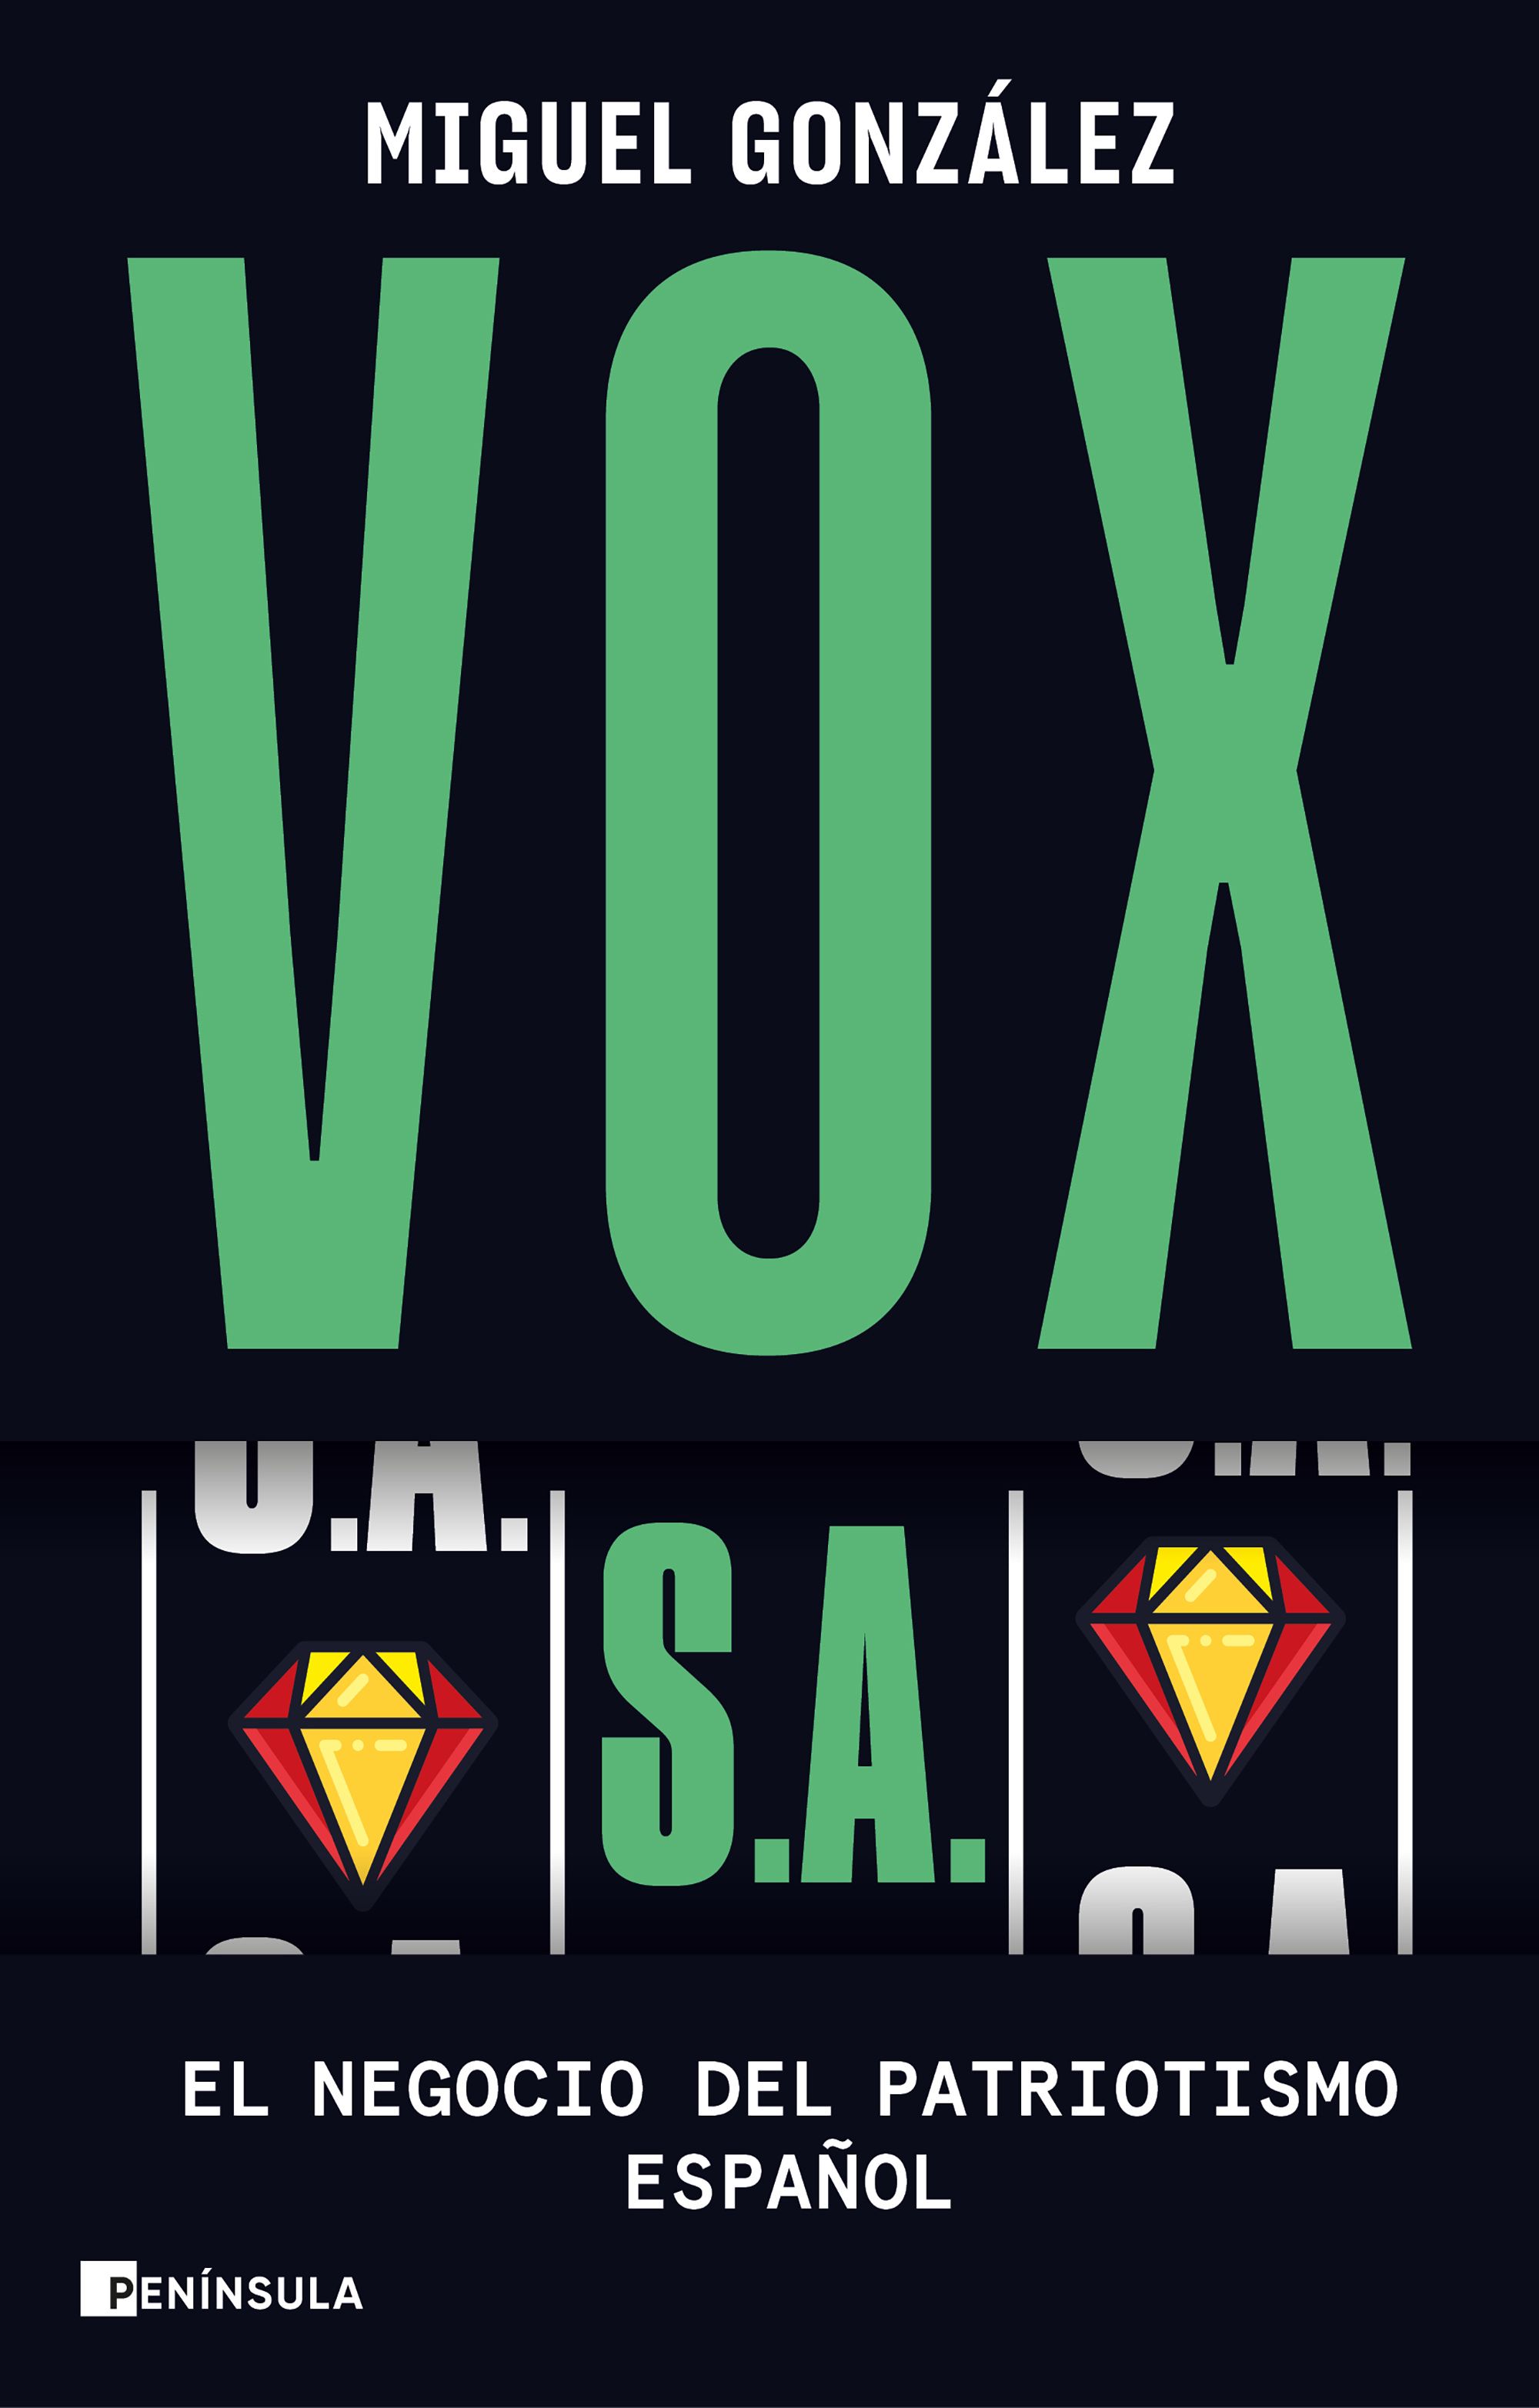 Vox S.A., de Miguel González